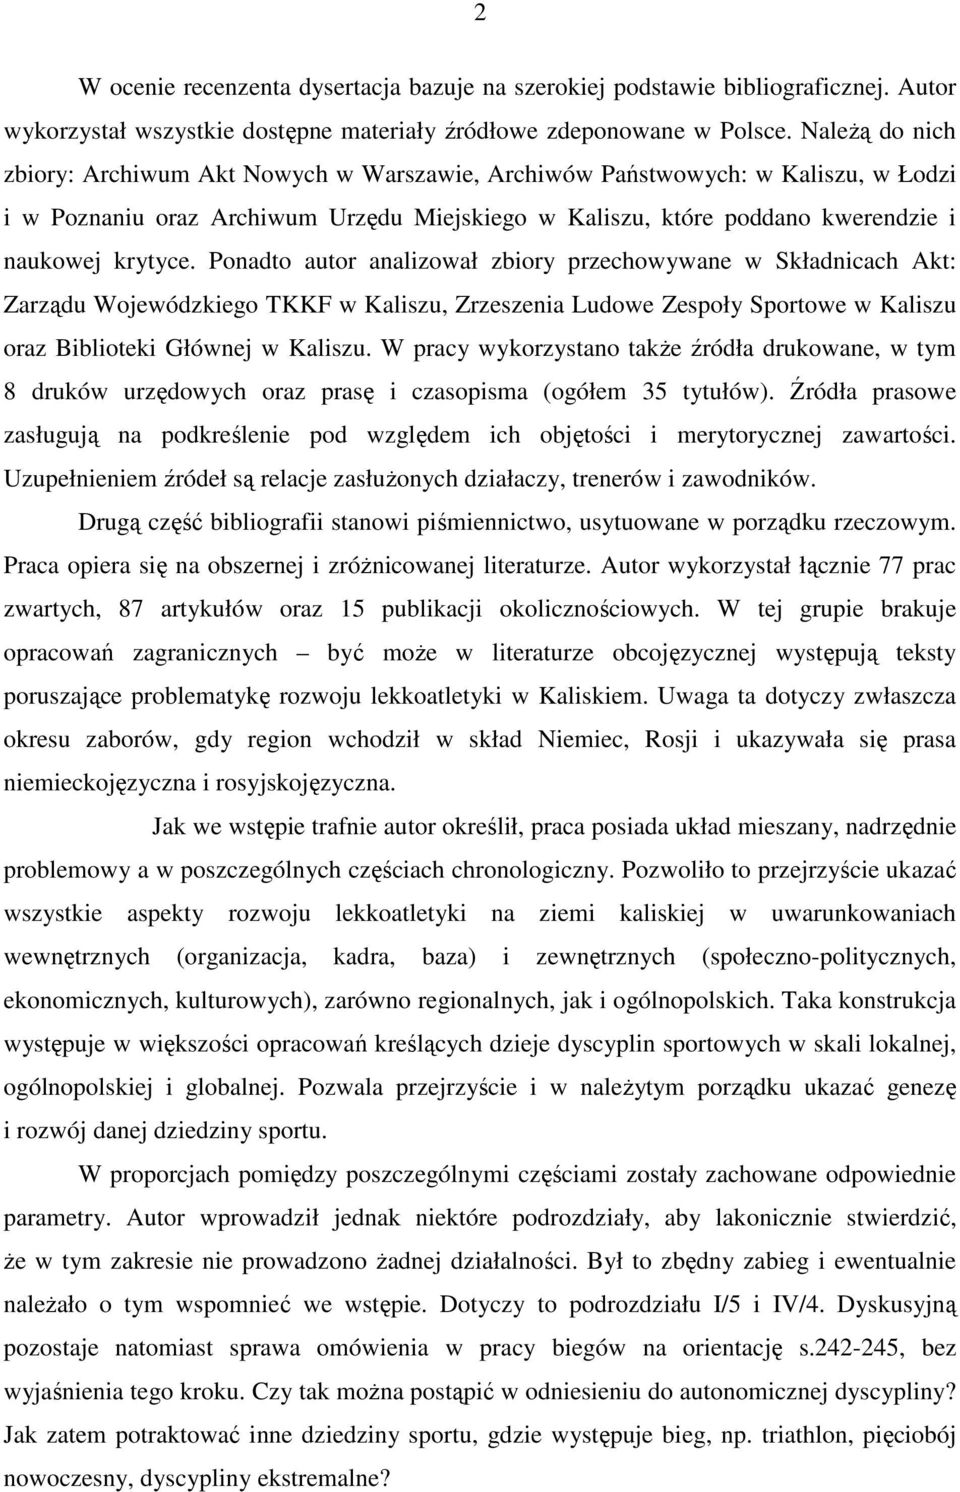 Ponadto autor analizował zbiory przechowywane w Składnicach Akt: Zarządu Wojewódzkiego TKKF w Kaliszu, Zrzeszenia Ludowe Zespoły Sportowe w Kaliszu oraz Biblioteki Głównej w Kaliszu.